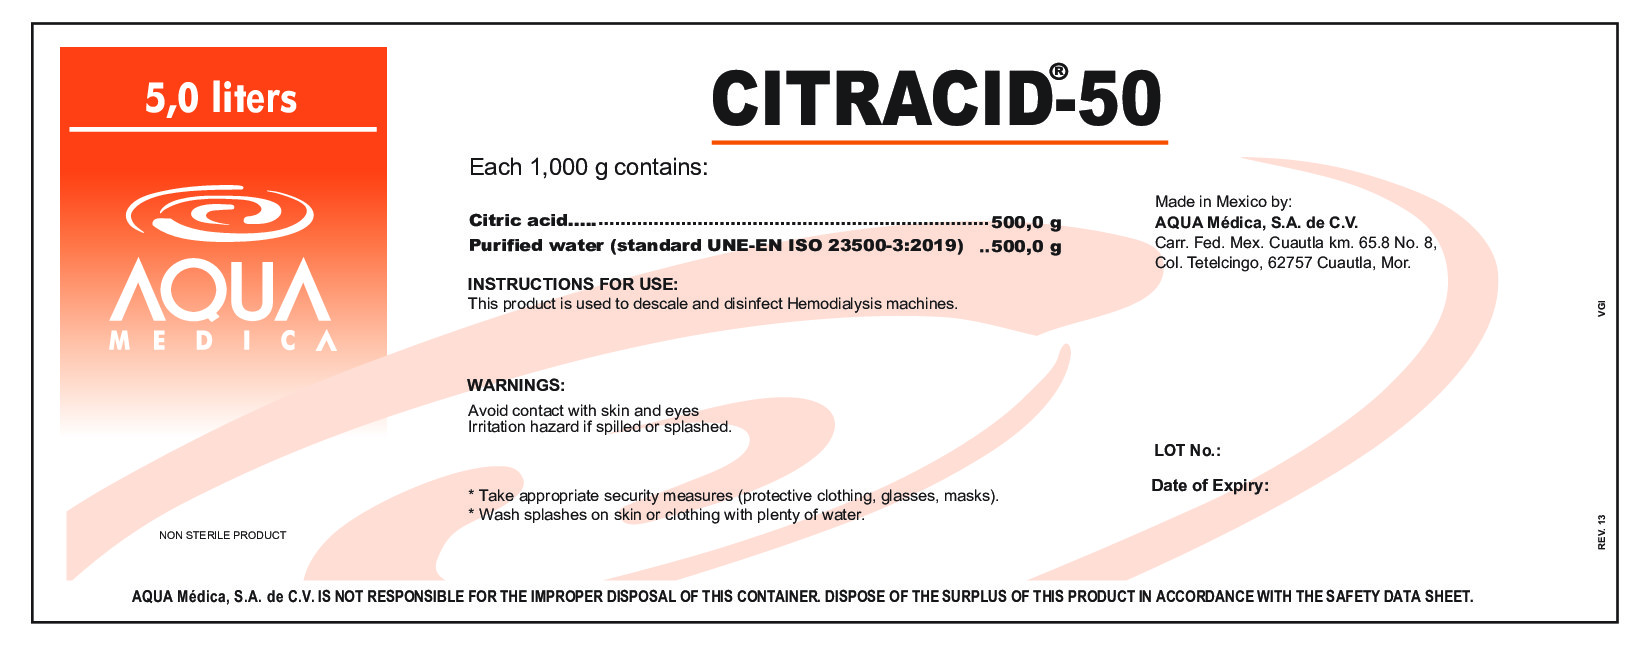 CITRACID-50 LABEL